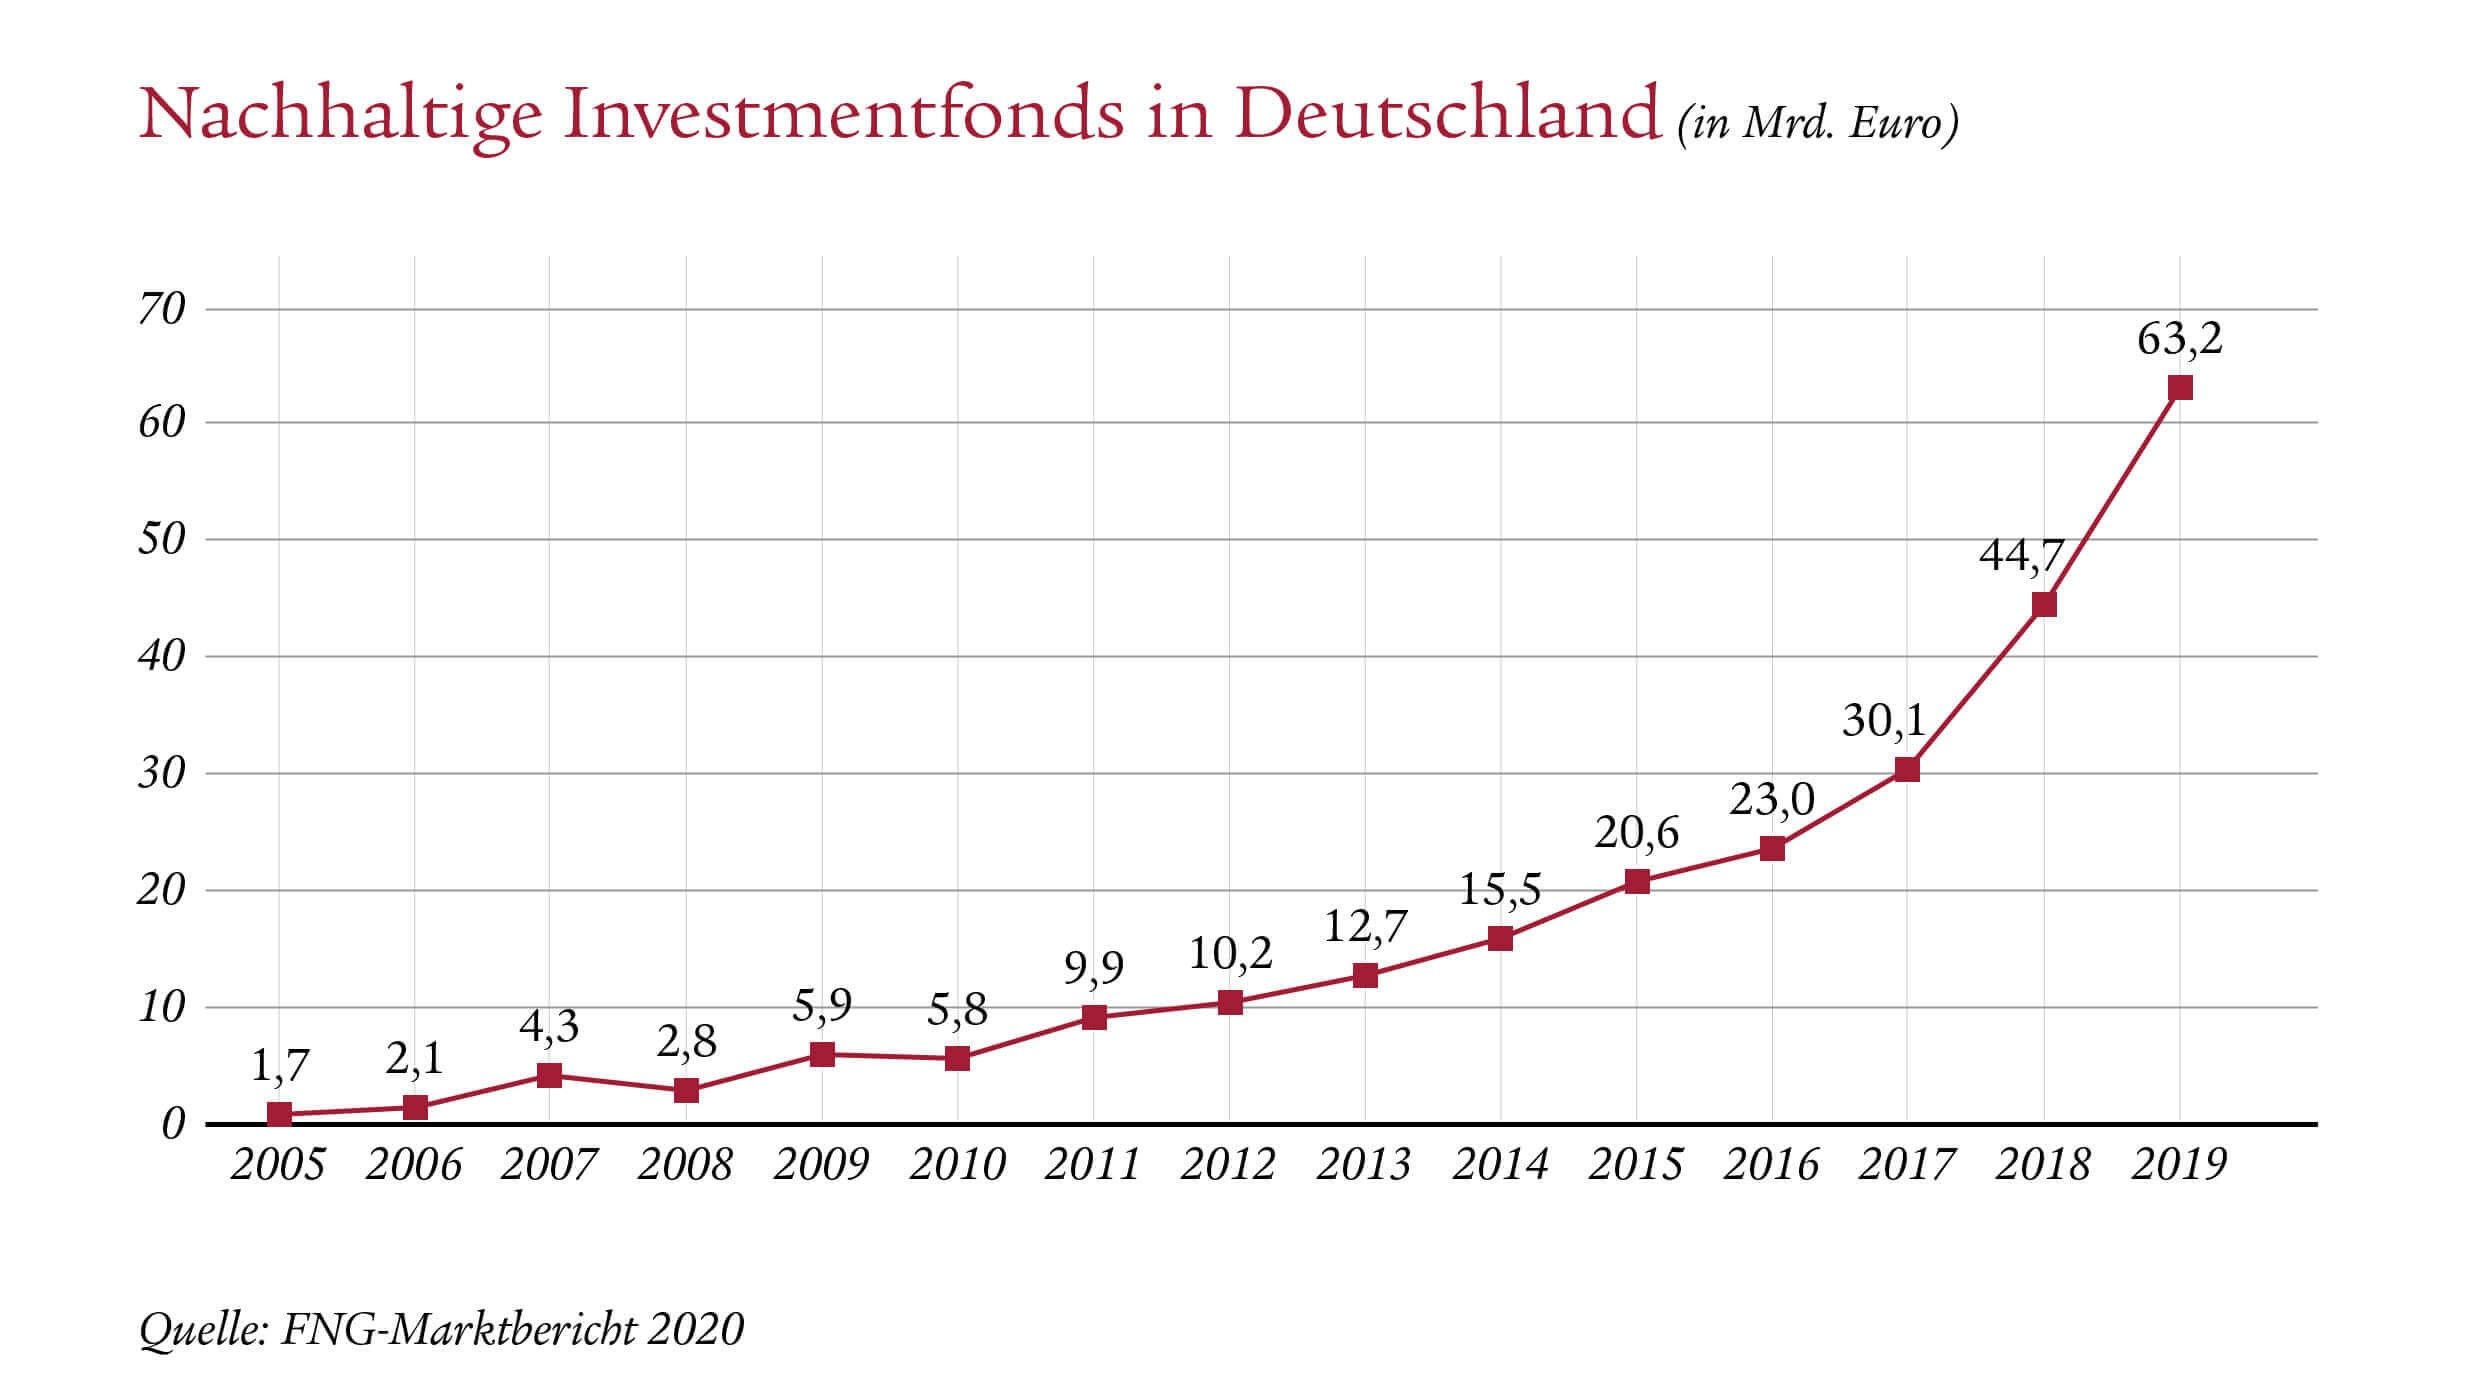 Nachhaltige Investmentfonds in Deutschland werden jedes Jahr beliebter. Das Investment steigt jährlich an.